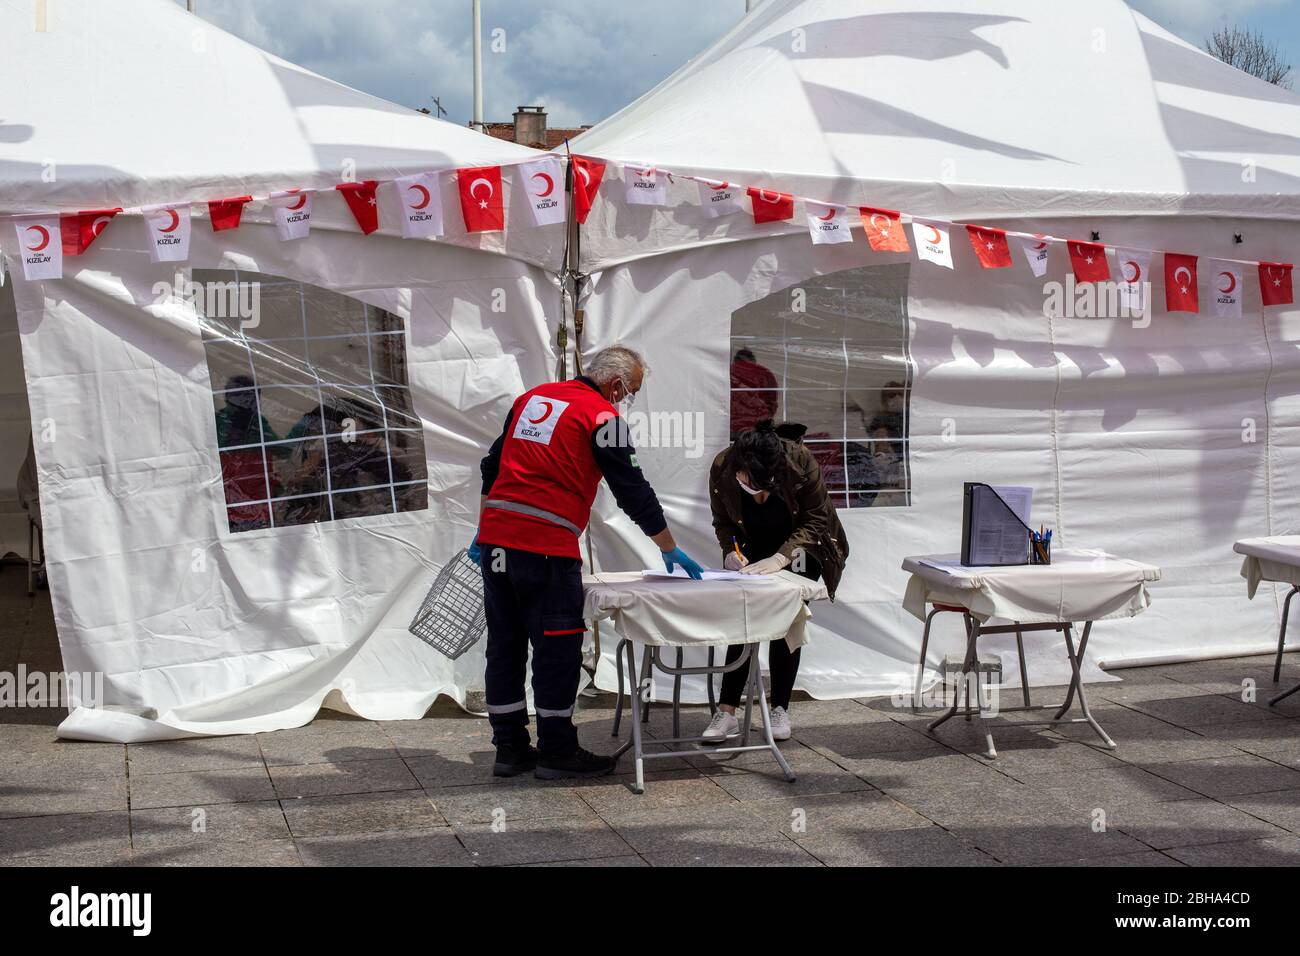 22 aprile 2020, Istanbul, Turchia: Persone che compilano il modulo di fronte alla tenda della Mezzaluna Rossa prima di donare sangue alla Mezzaluna Rossa turca. Foto Stock